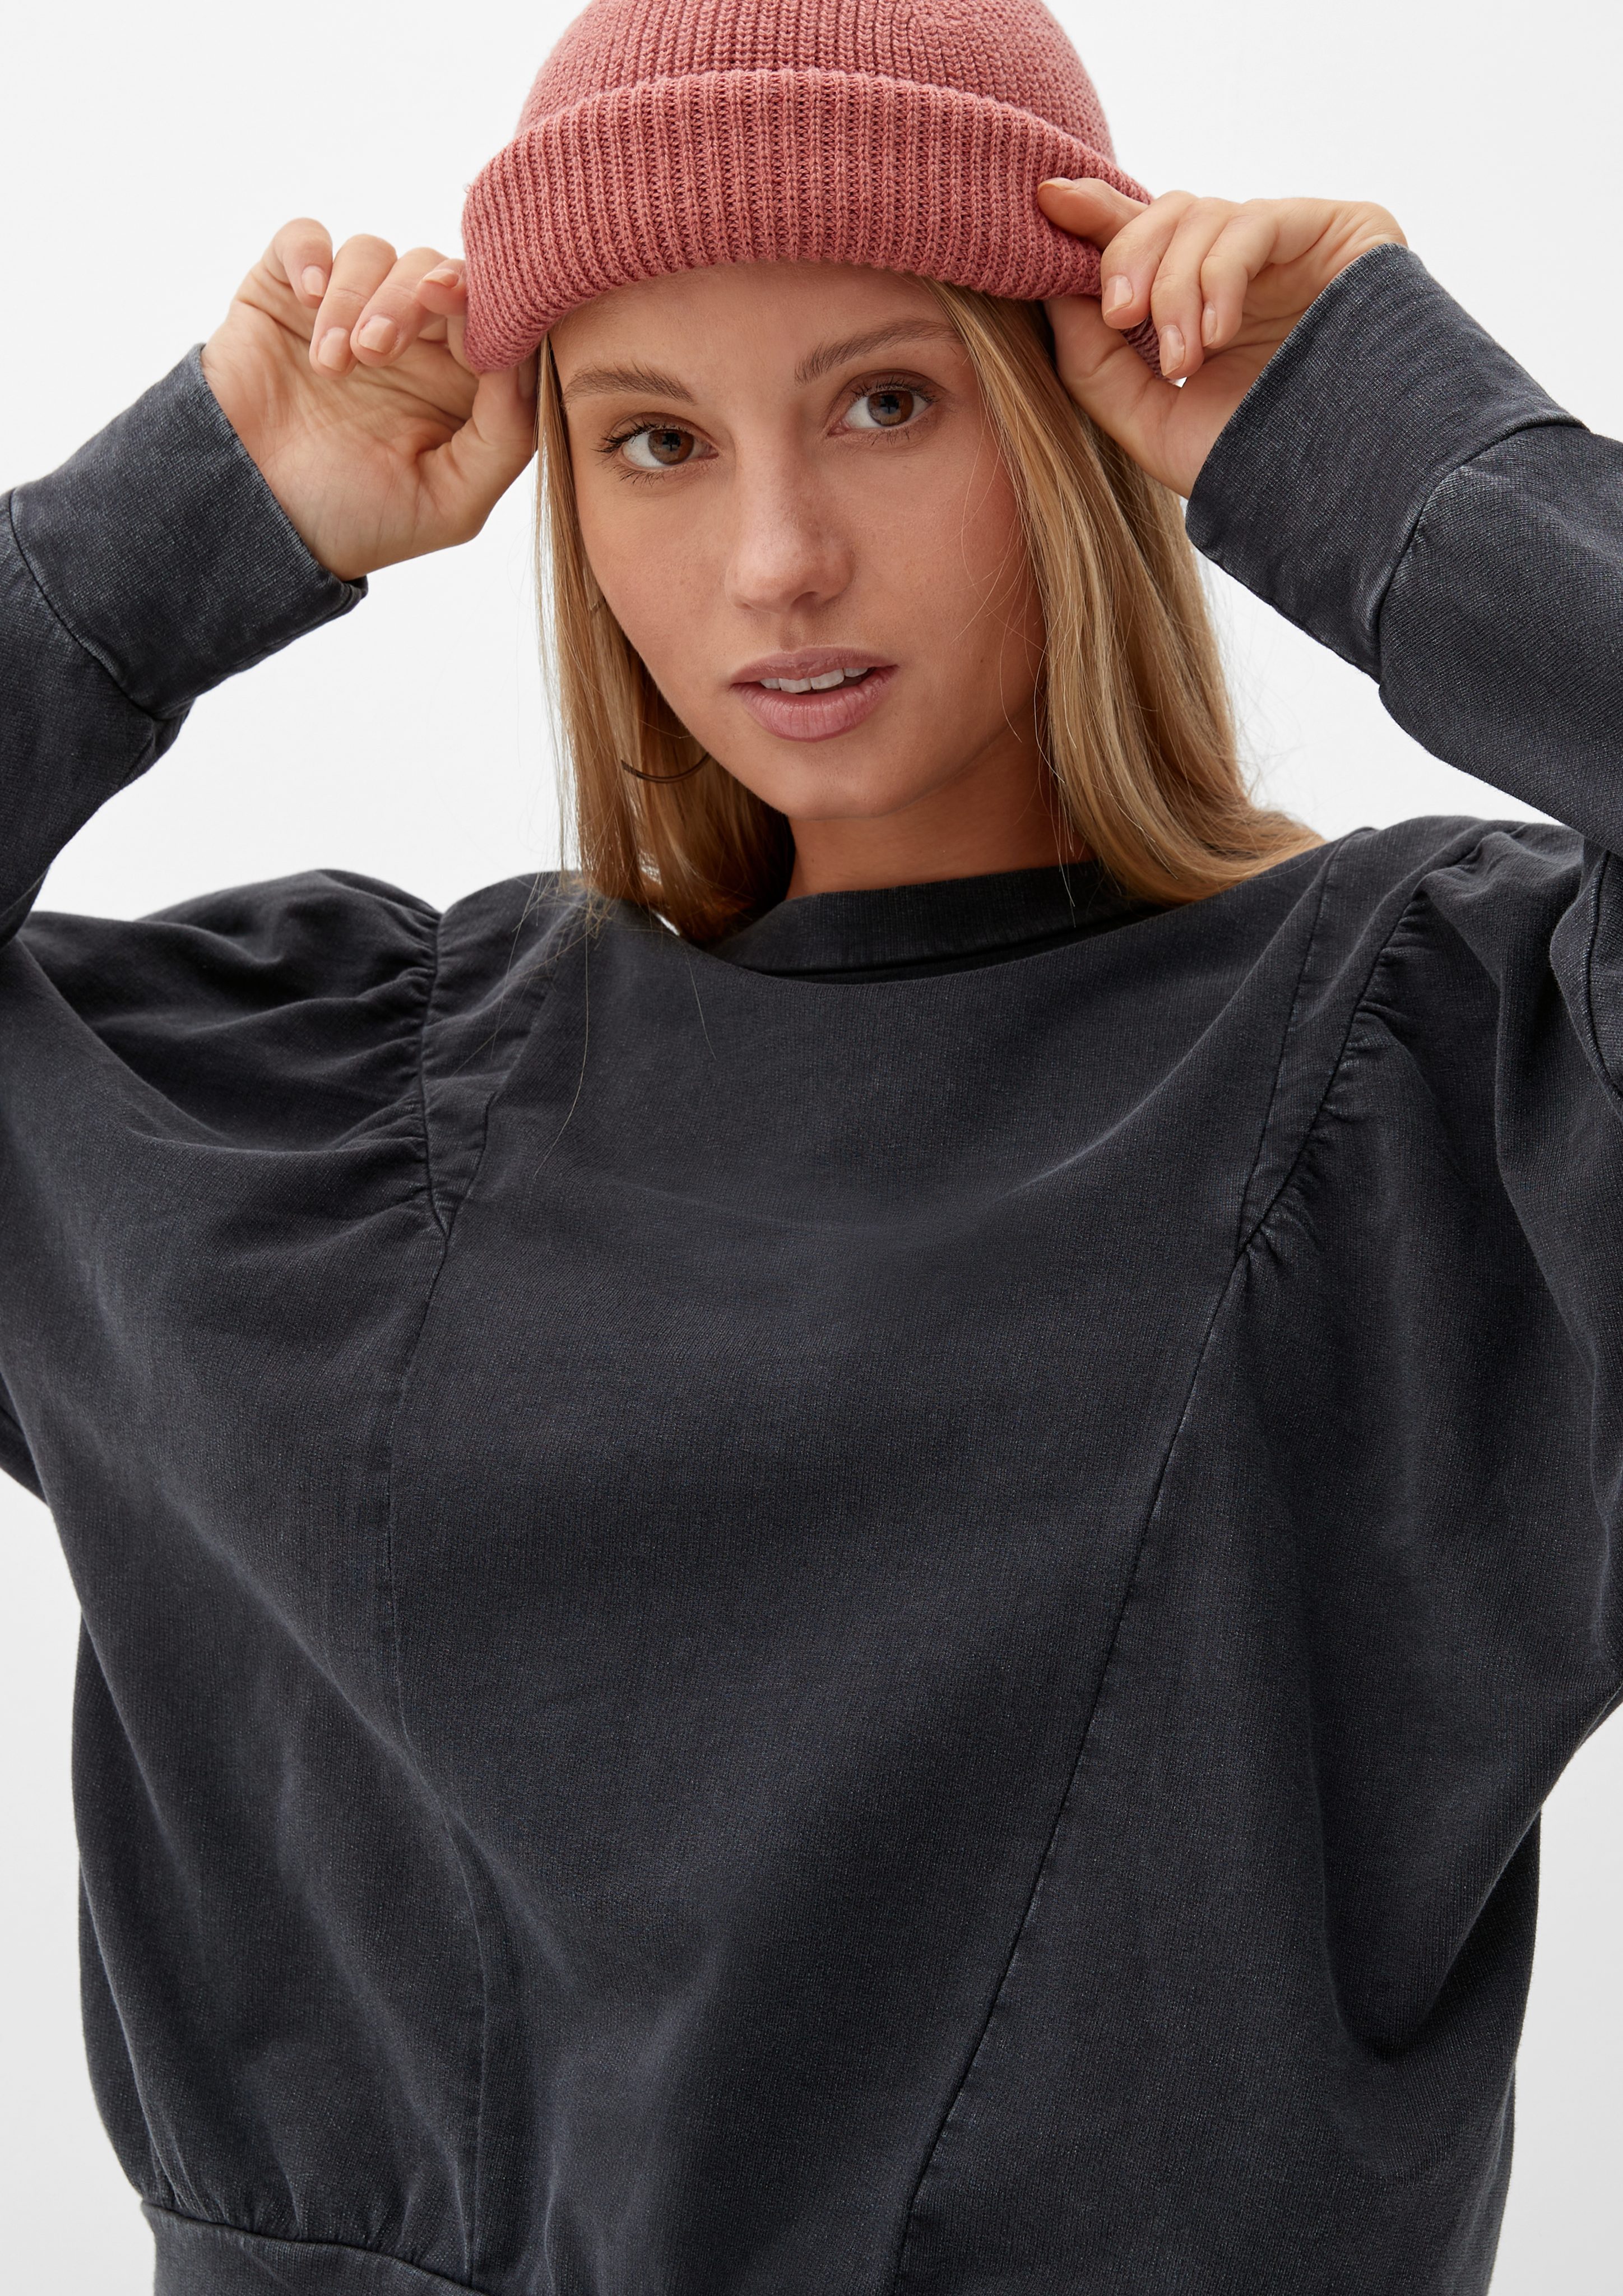 Sweatshirt in aus s.Oliver Optik by Sweatware in Raffung, Q/S Qualität, melierter weicher Sweatshirt Baumwolle,